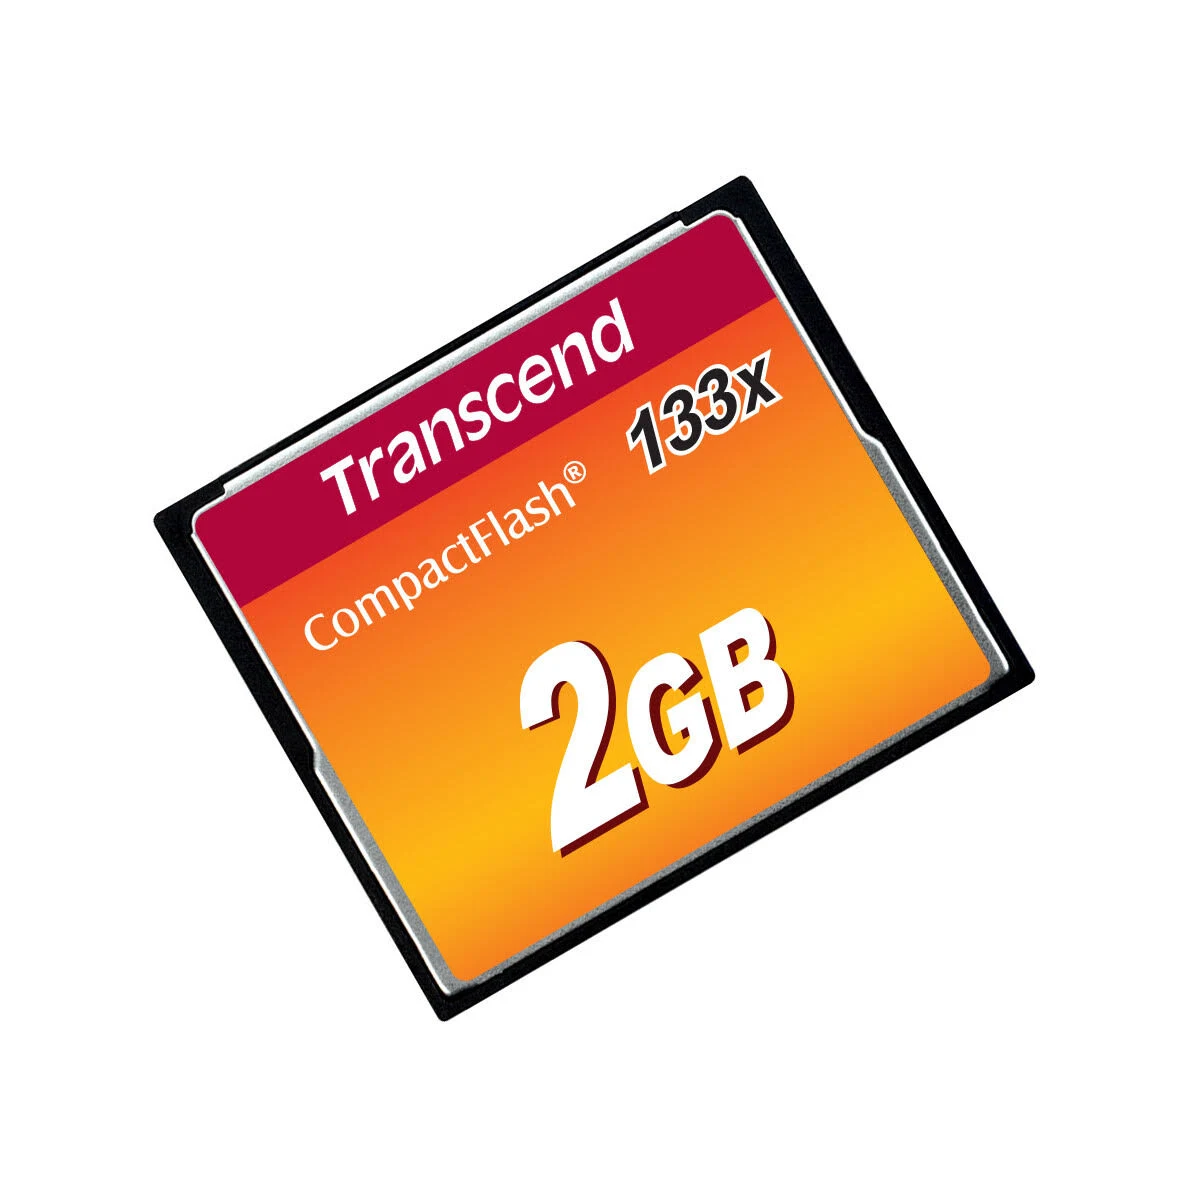 20 Compact TRANSCEND GB, Flash m0000BIP8I, Speicherkarte, 2 MB/s